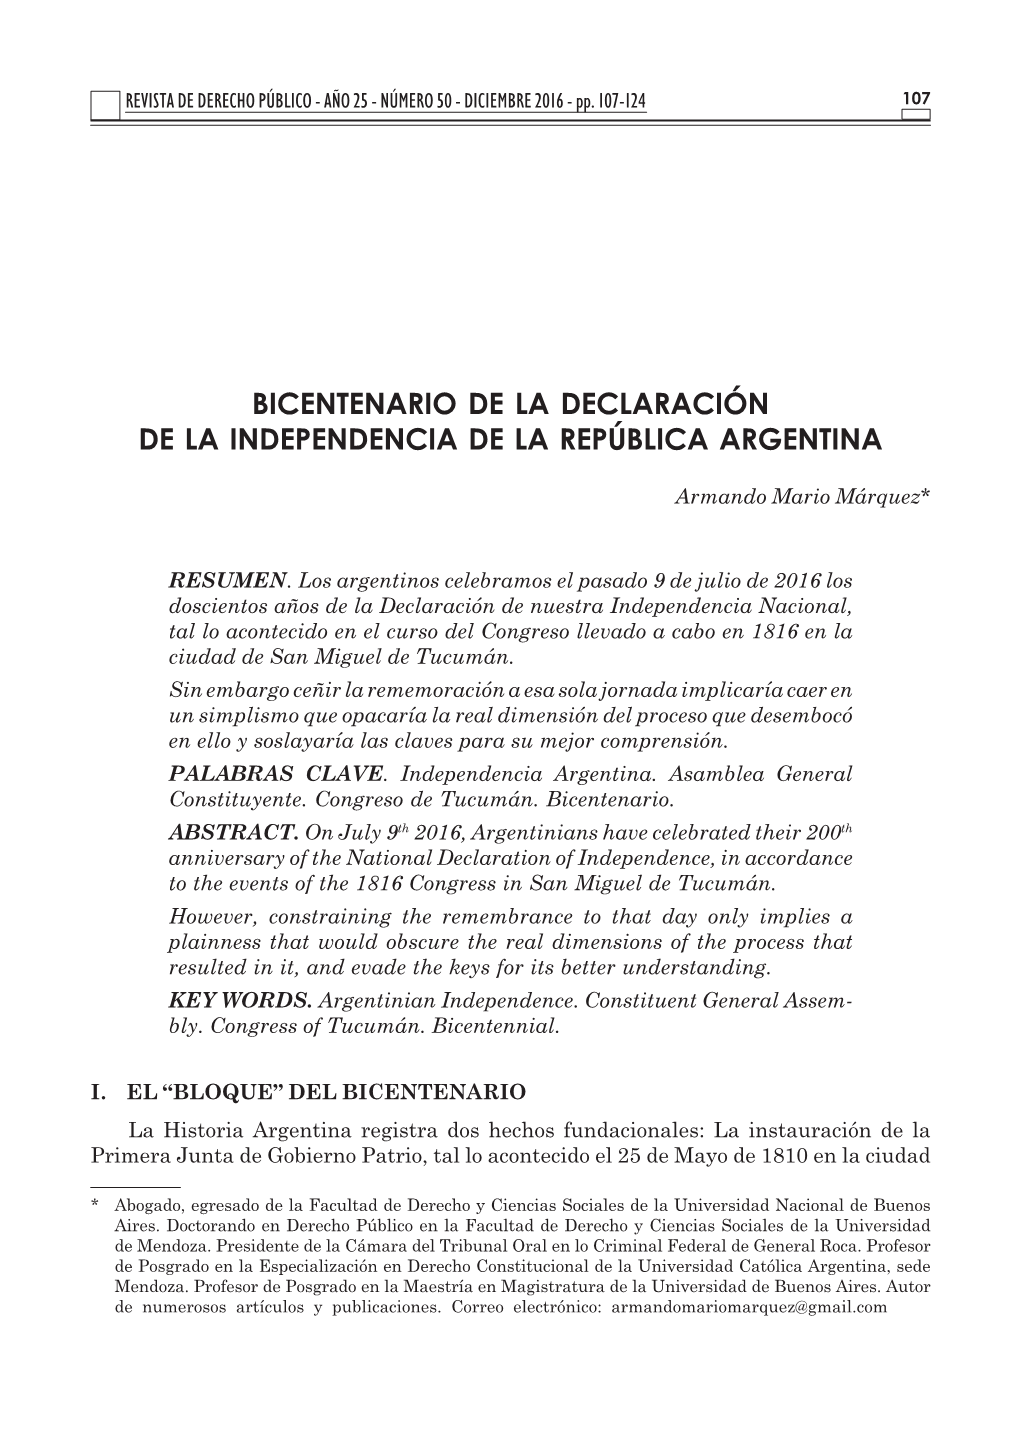 Bicentenario De La Declaración De La Independencia De La República Argentina